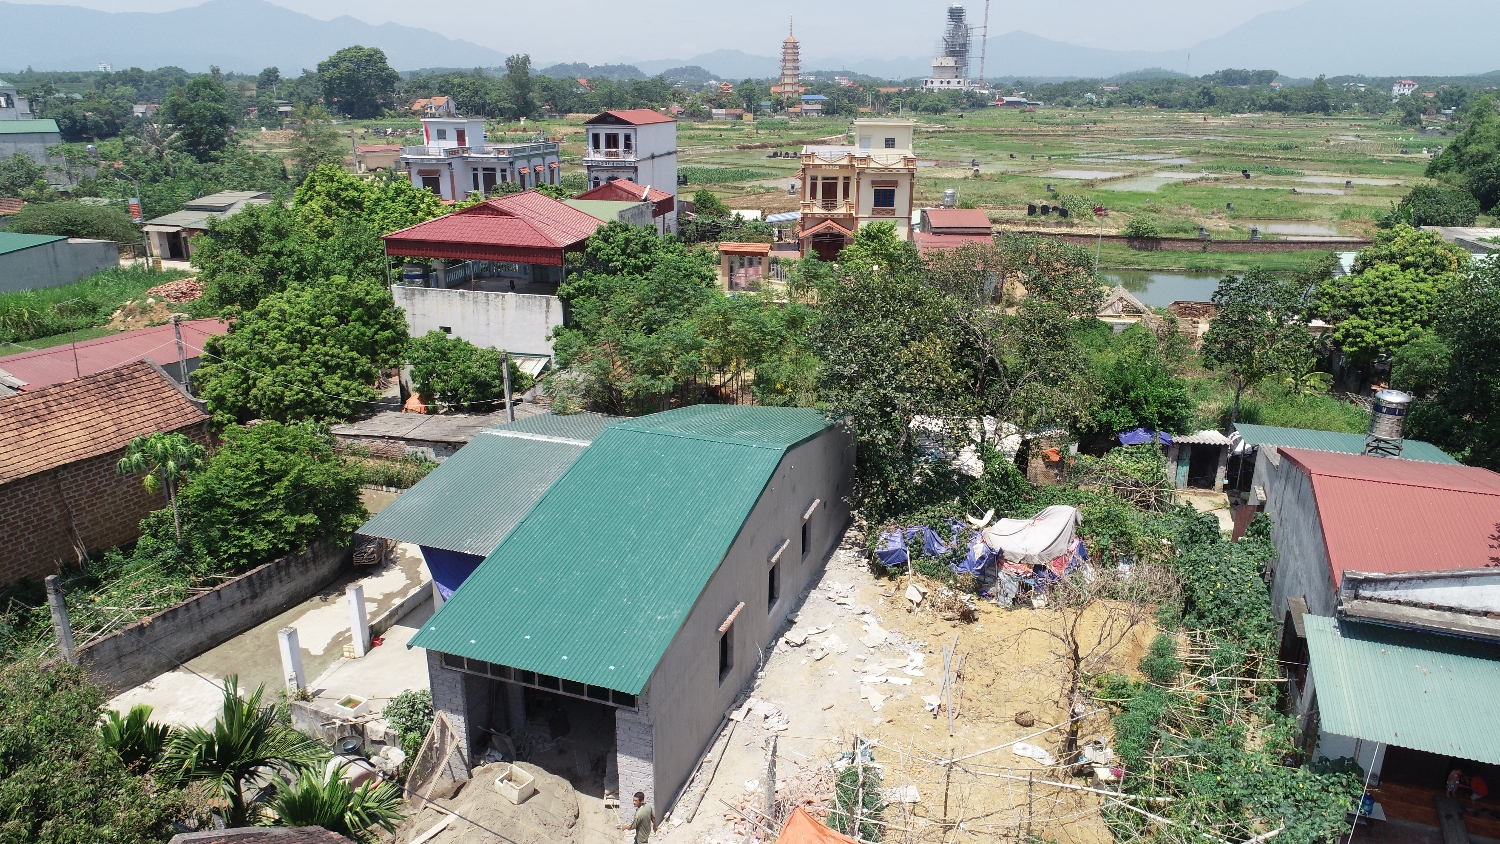 Cập nhật hình ảnh xây dựng nhà Đoàn Kết tại thôn Đậu xã Sơn Đông.